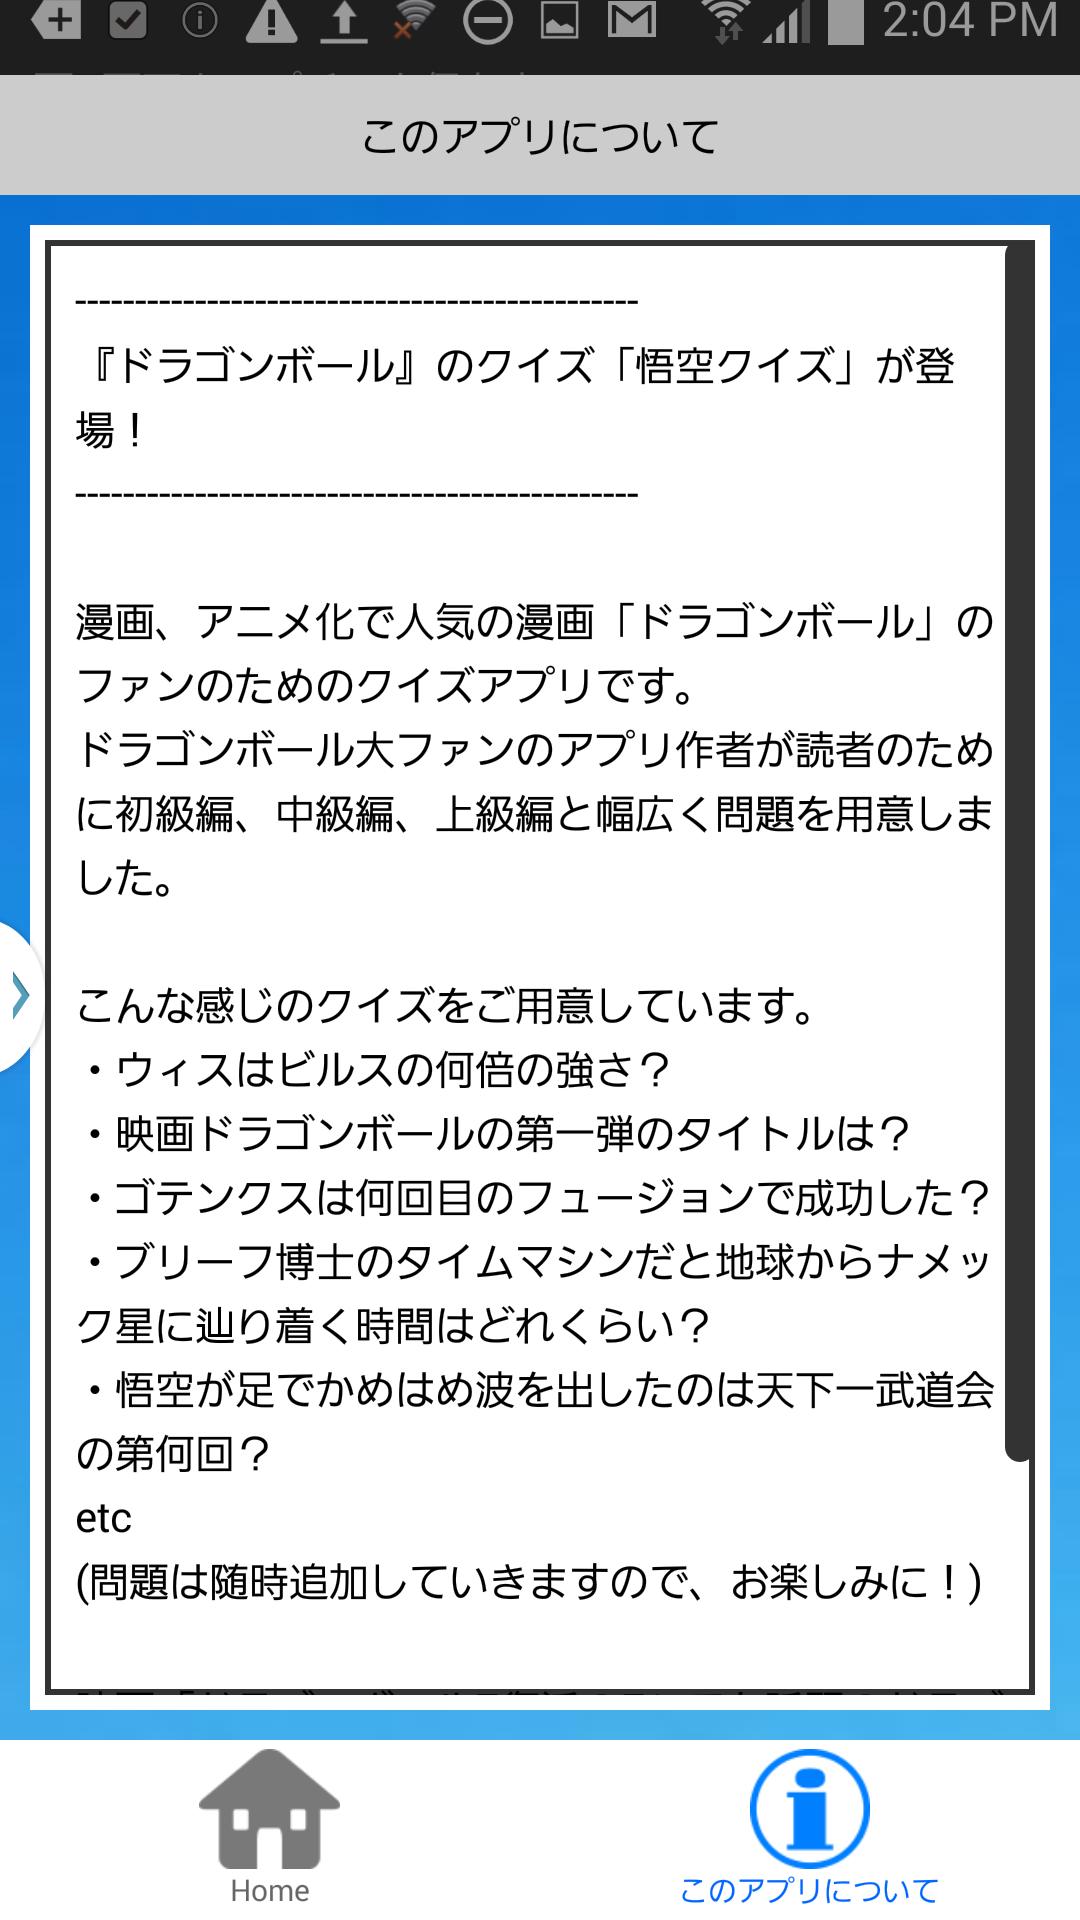 悟空マニアクイズ For ドラゴンボール For Android Apk Download